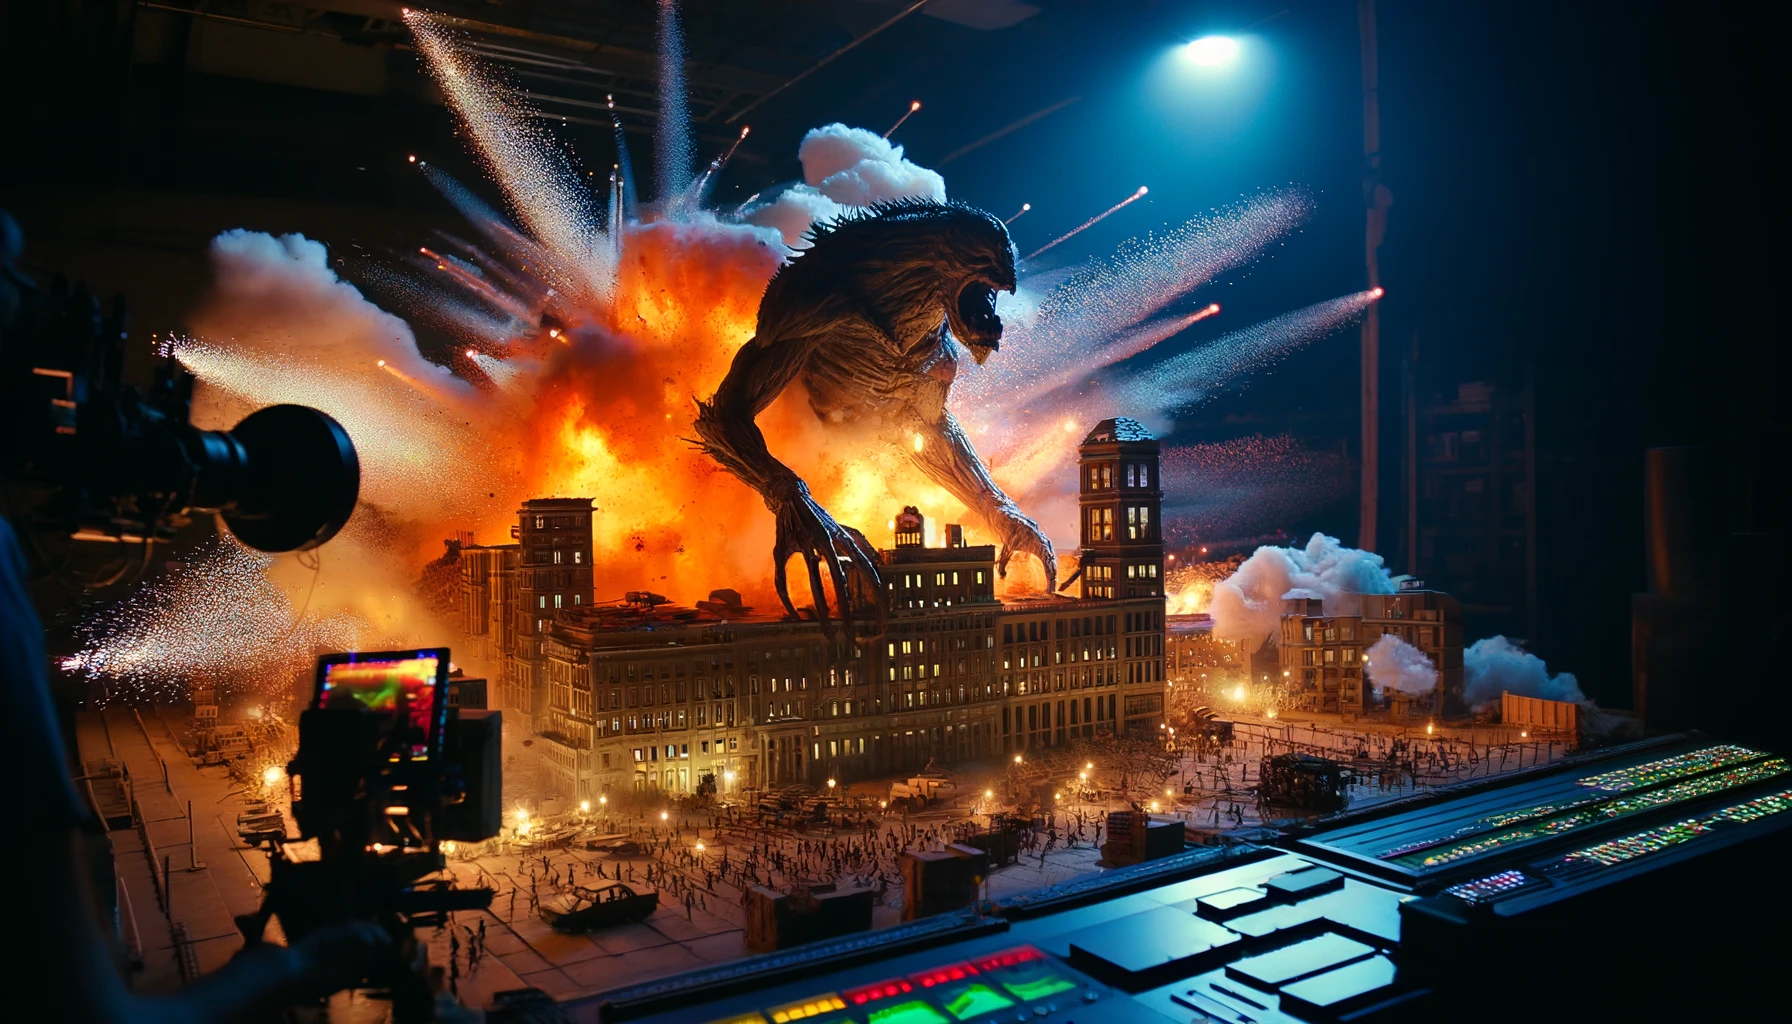 Spezial Effekt (SFX) Explosion eines Gebäude durch ein Monster